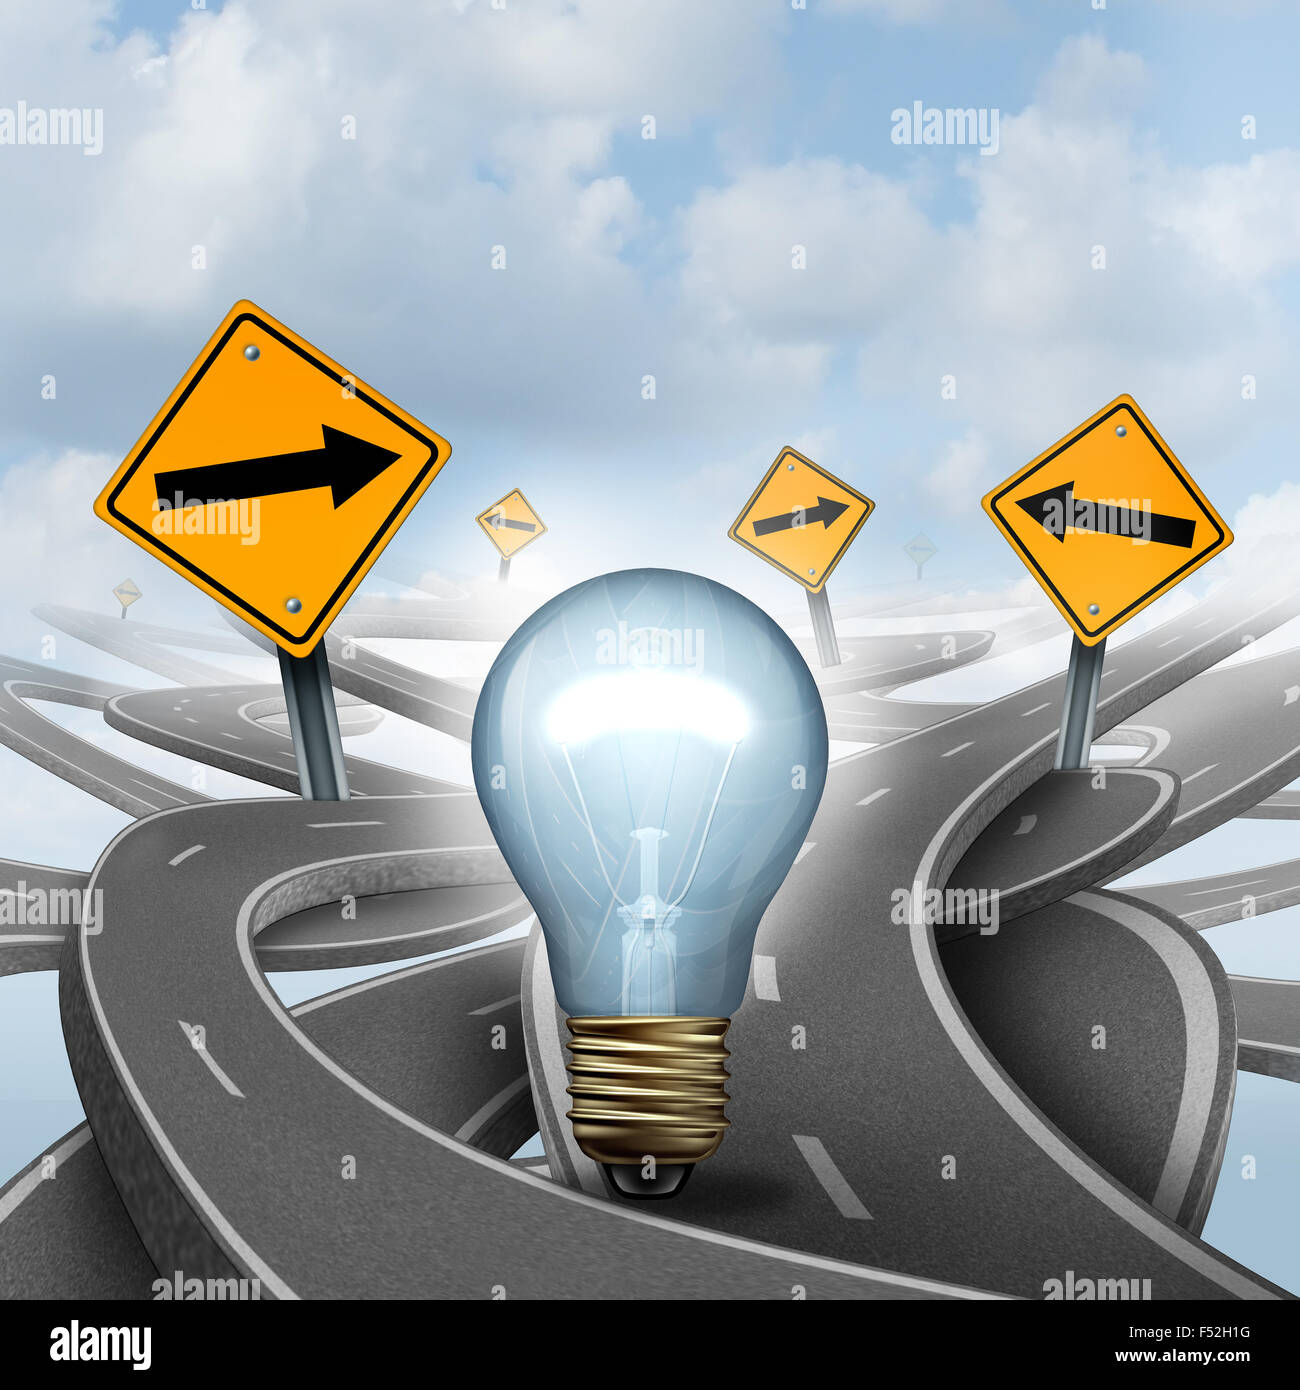 Idées stratégiques concept comme un symbole d'affaires avec une ampoule ampoule ou choisir la bonne voie stratégique pour une nouvelle méthode créative avec des flèches de signalisation jaune et les routes et autoroutes emmêlées dans un sens confus. Banque D'Images